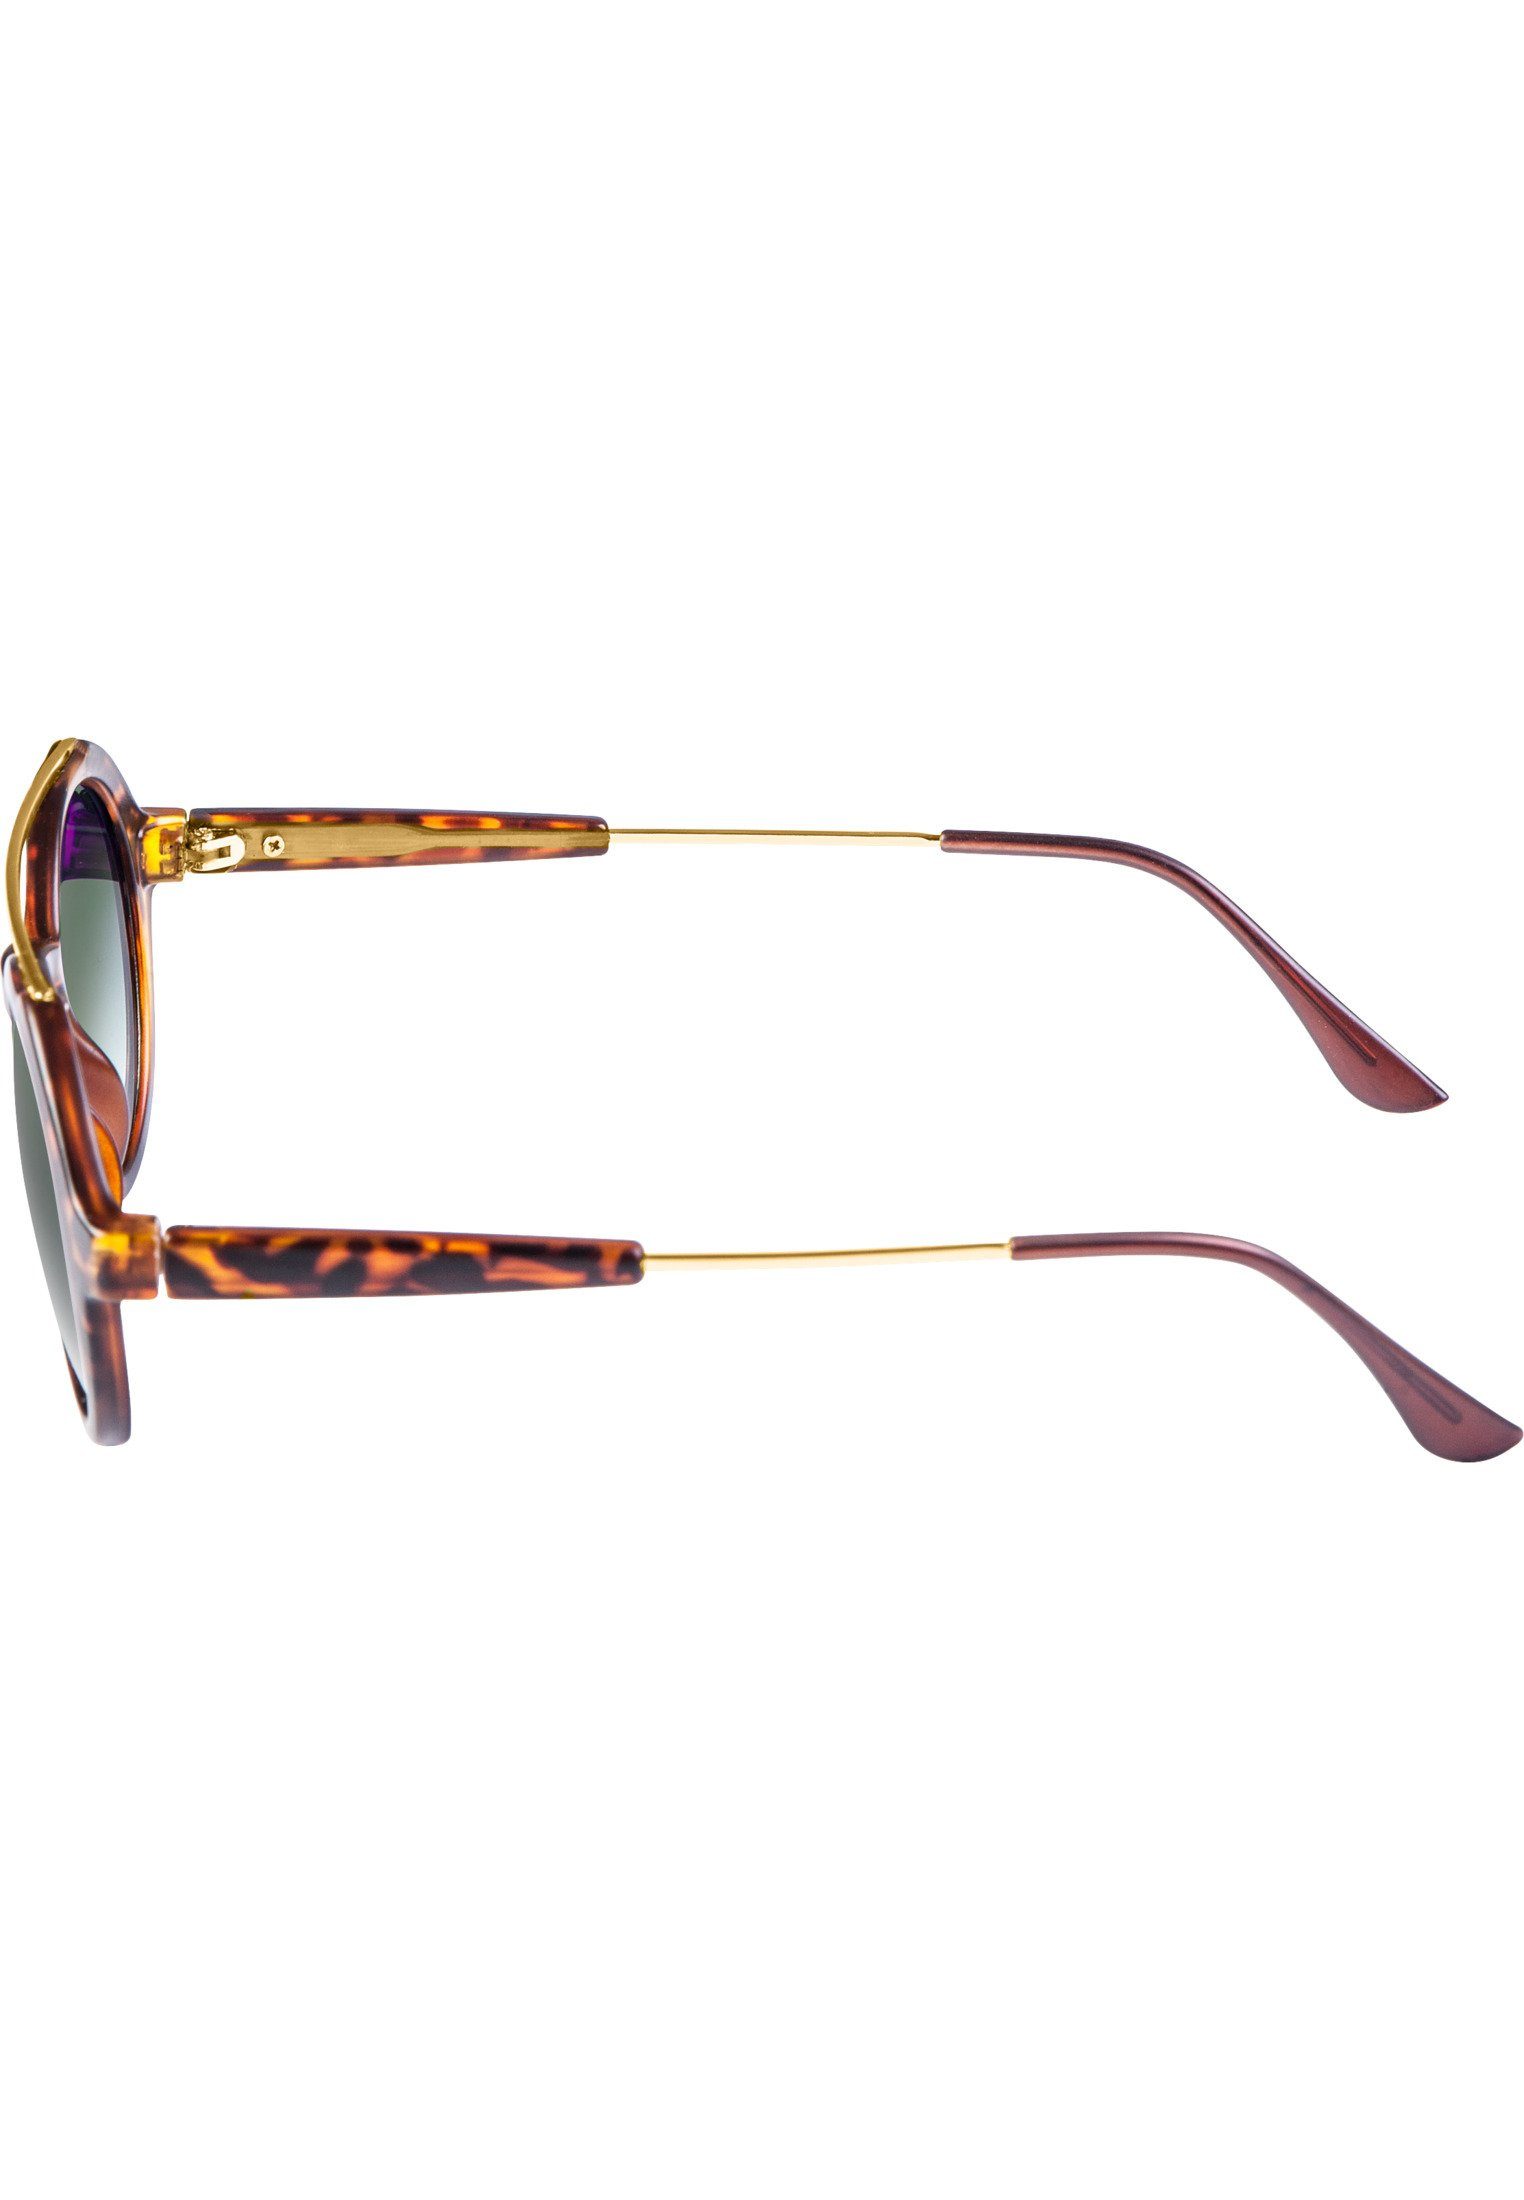 MSTRDS Sonnenbrille Retro havanna/green Sunglasses Accessoires Space